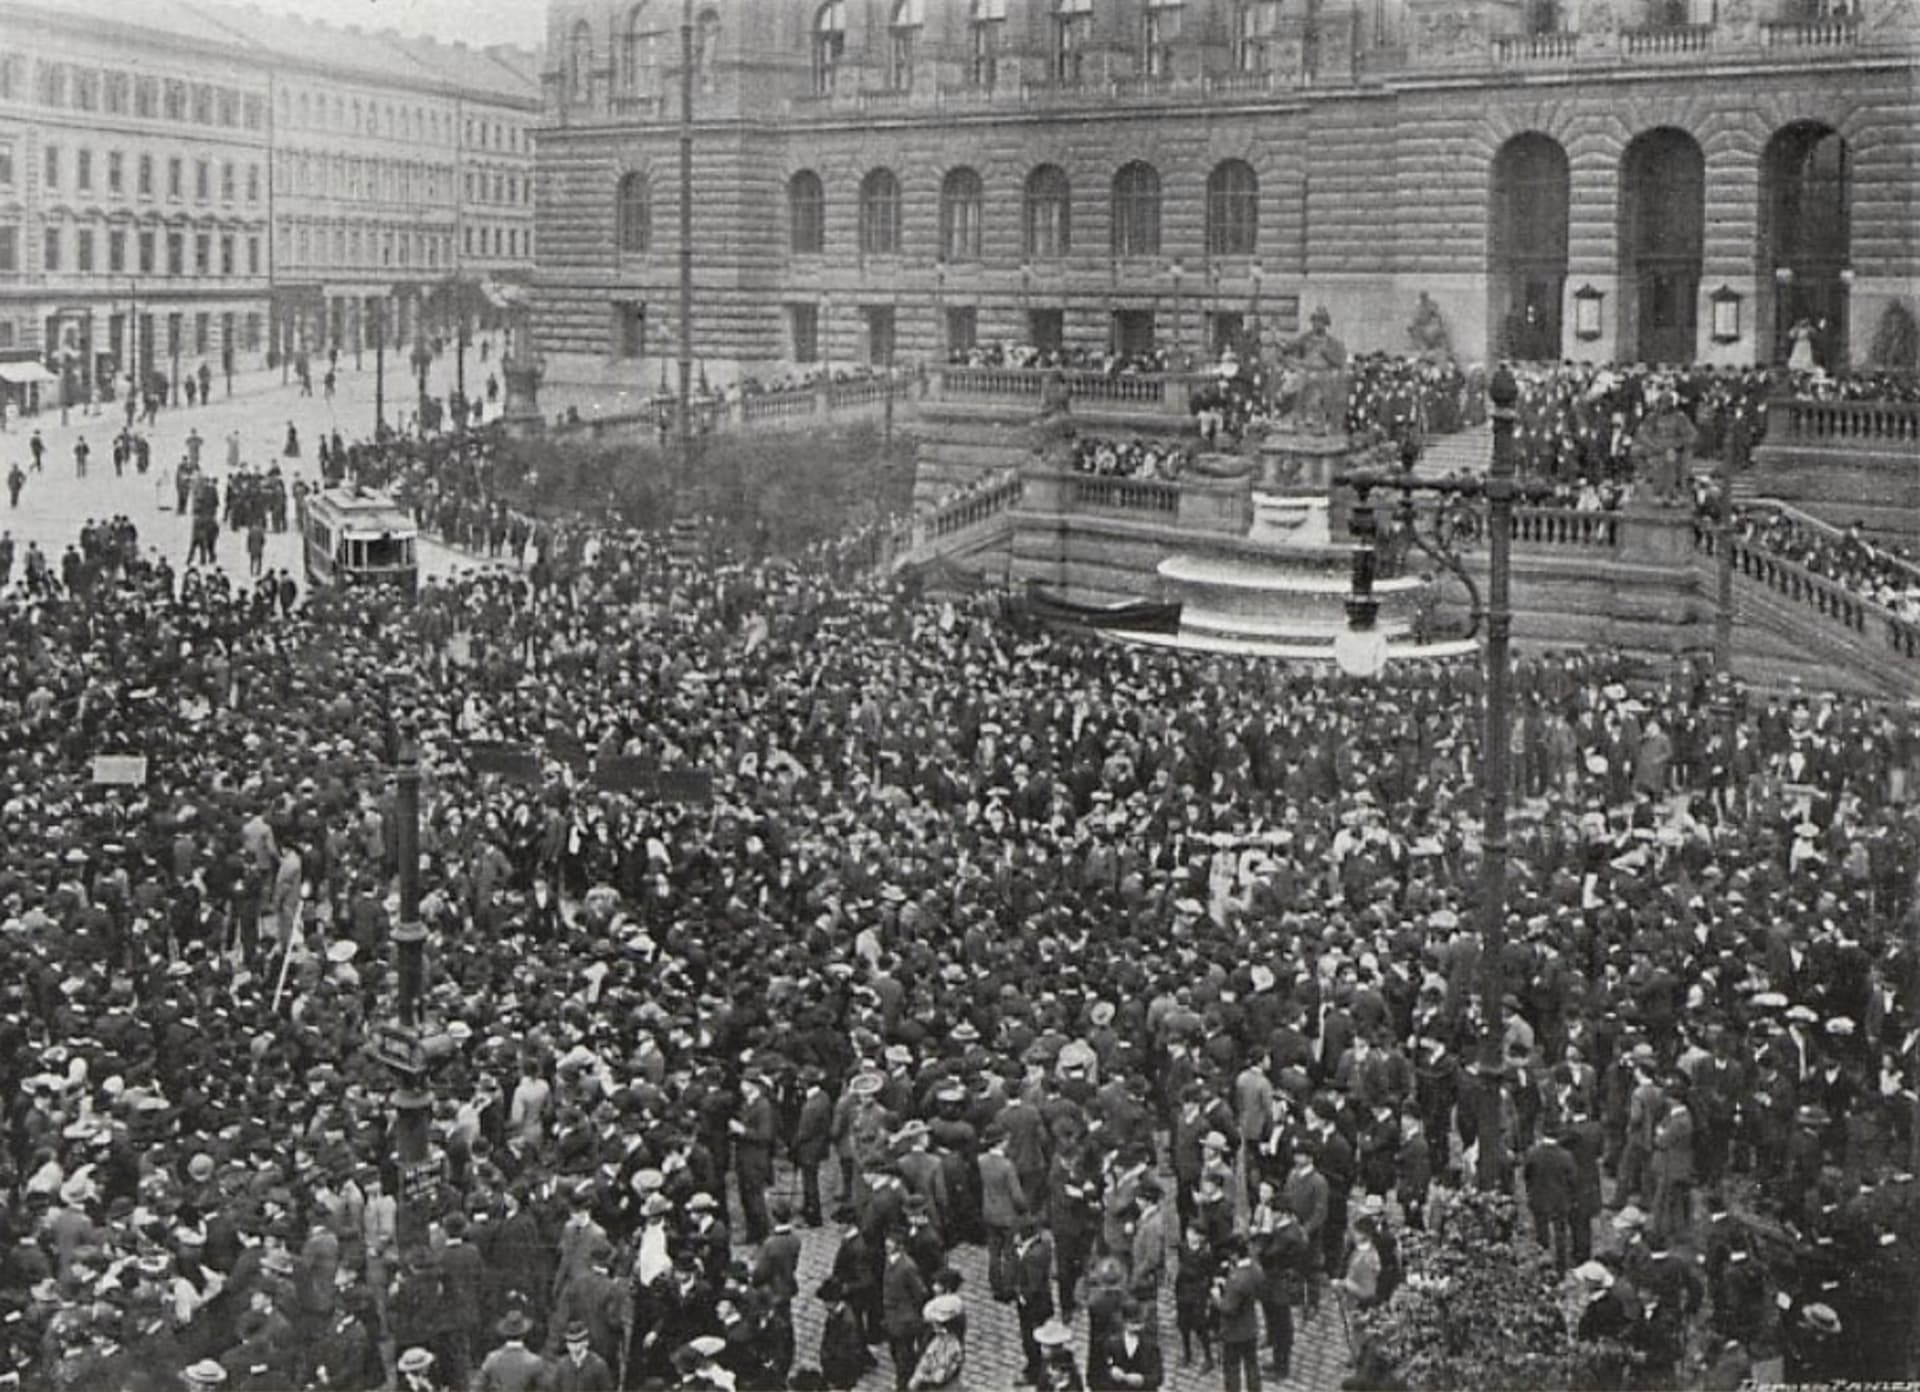 Oslavy Svátku práce v Praze roku 1906, v reportáži časopisu Český svět. Snímek z prvních oslav v roce 1890 není znám.